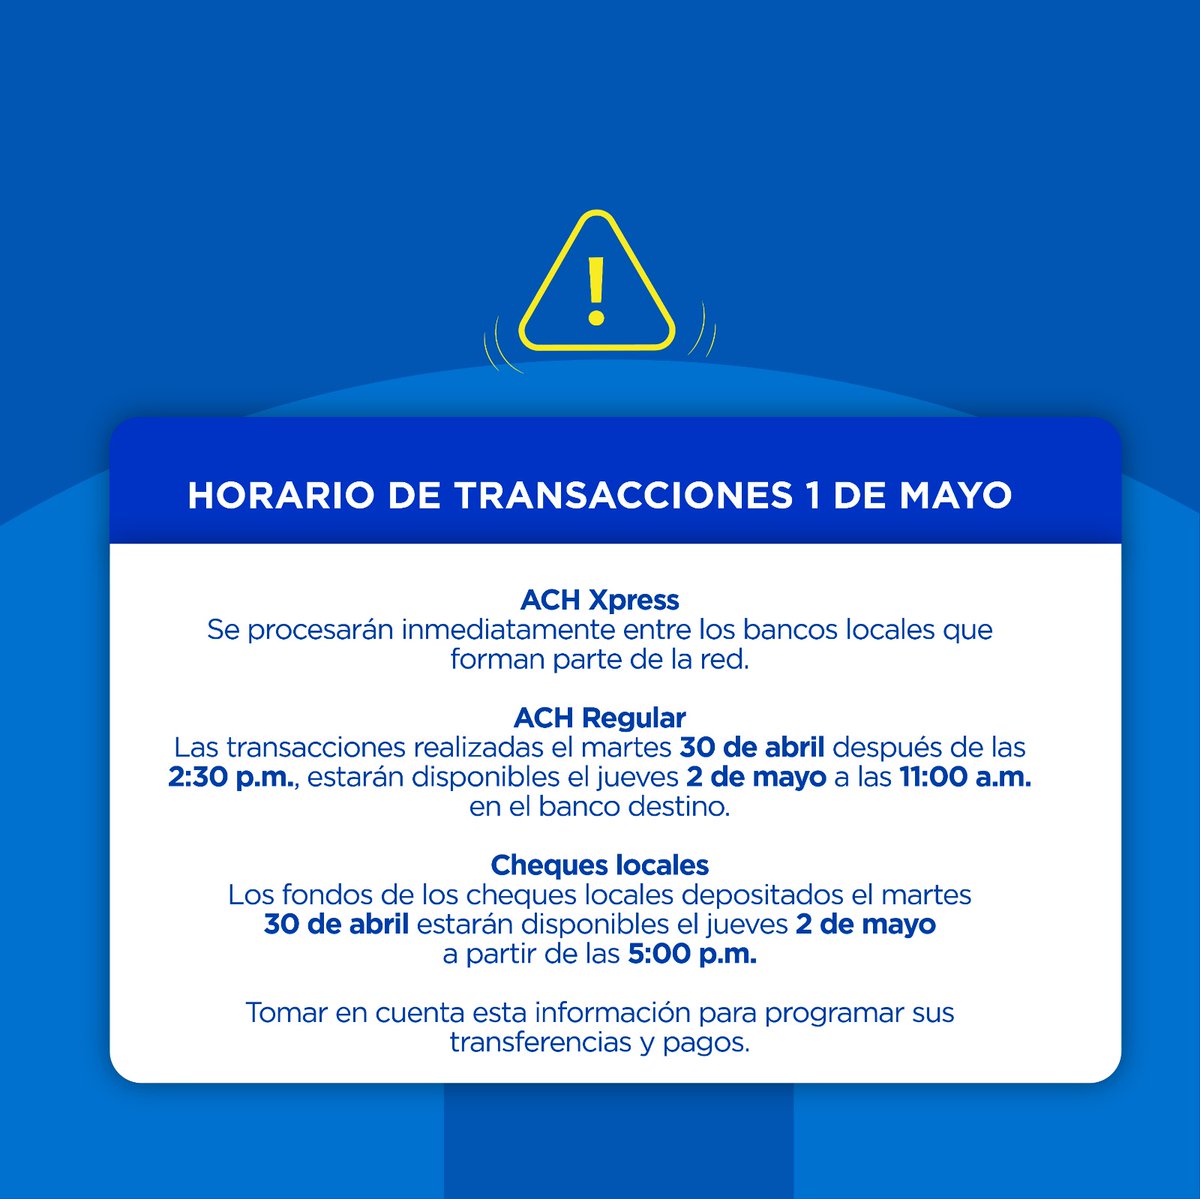 #AvisoImportante Horario de transacciones para el 1 de mayo. #CajaDeAhorros